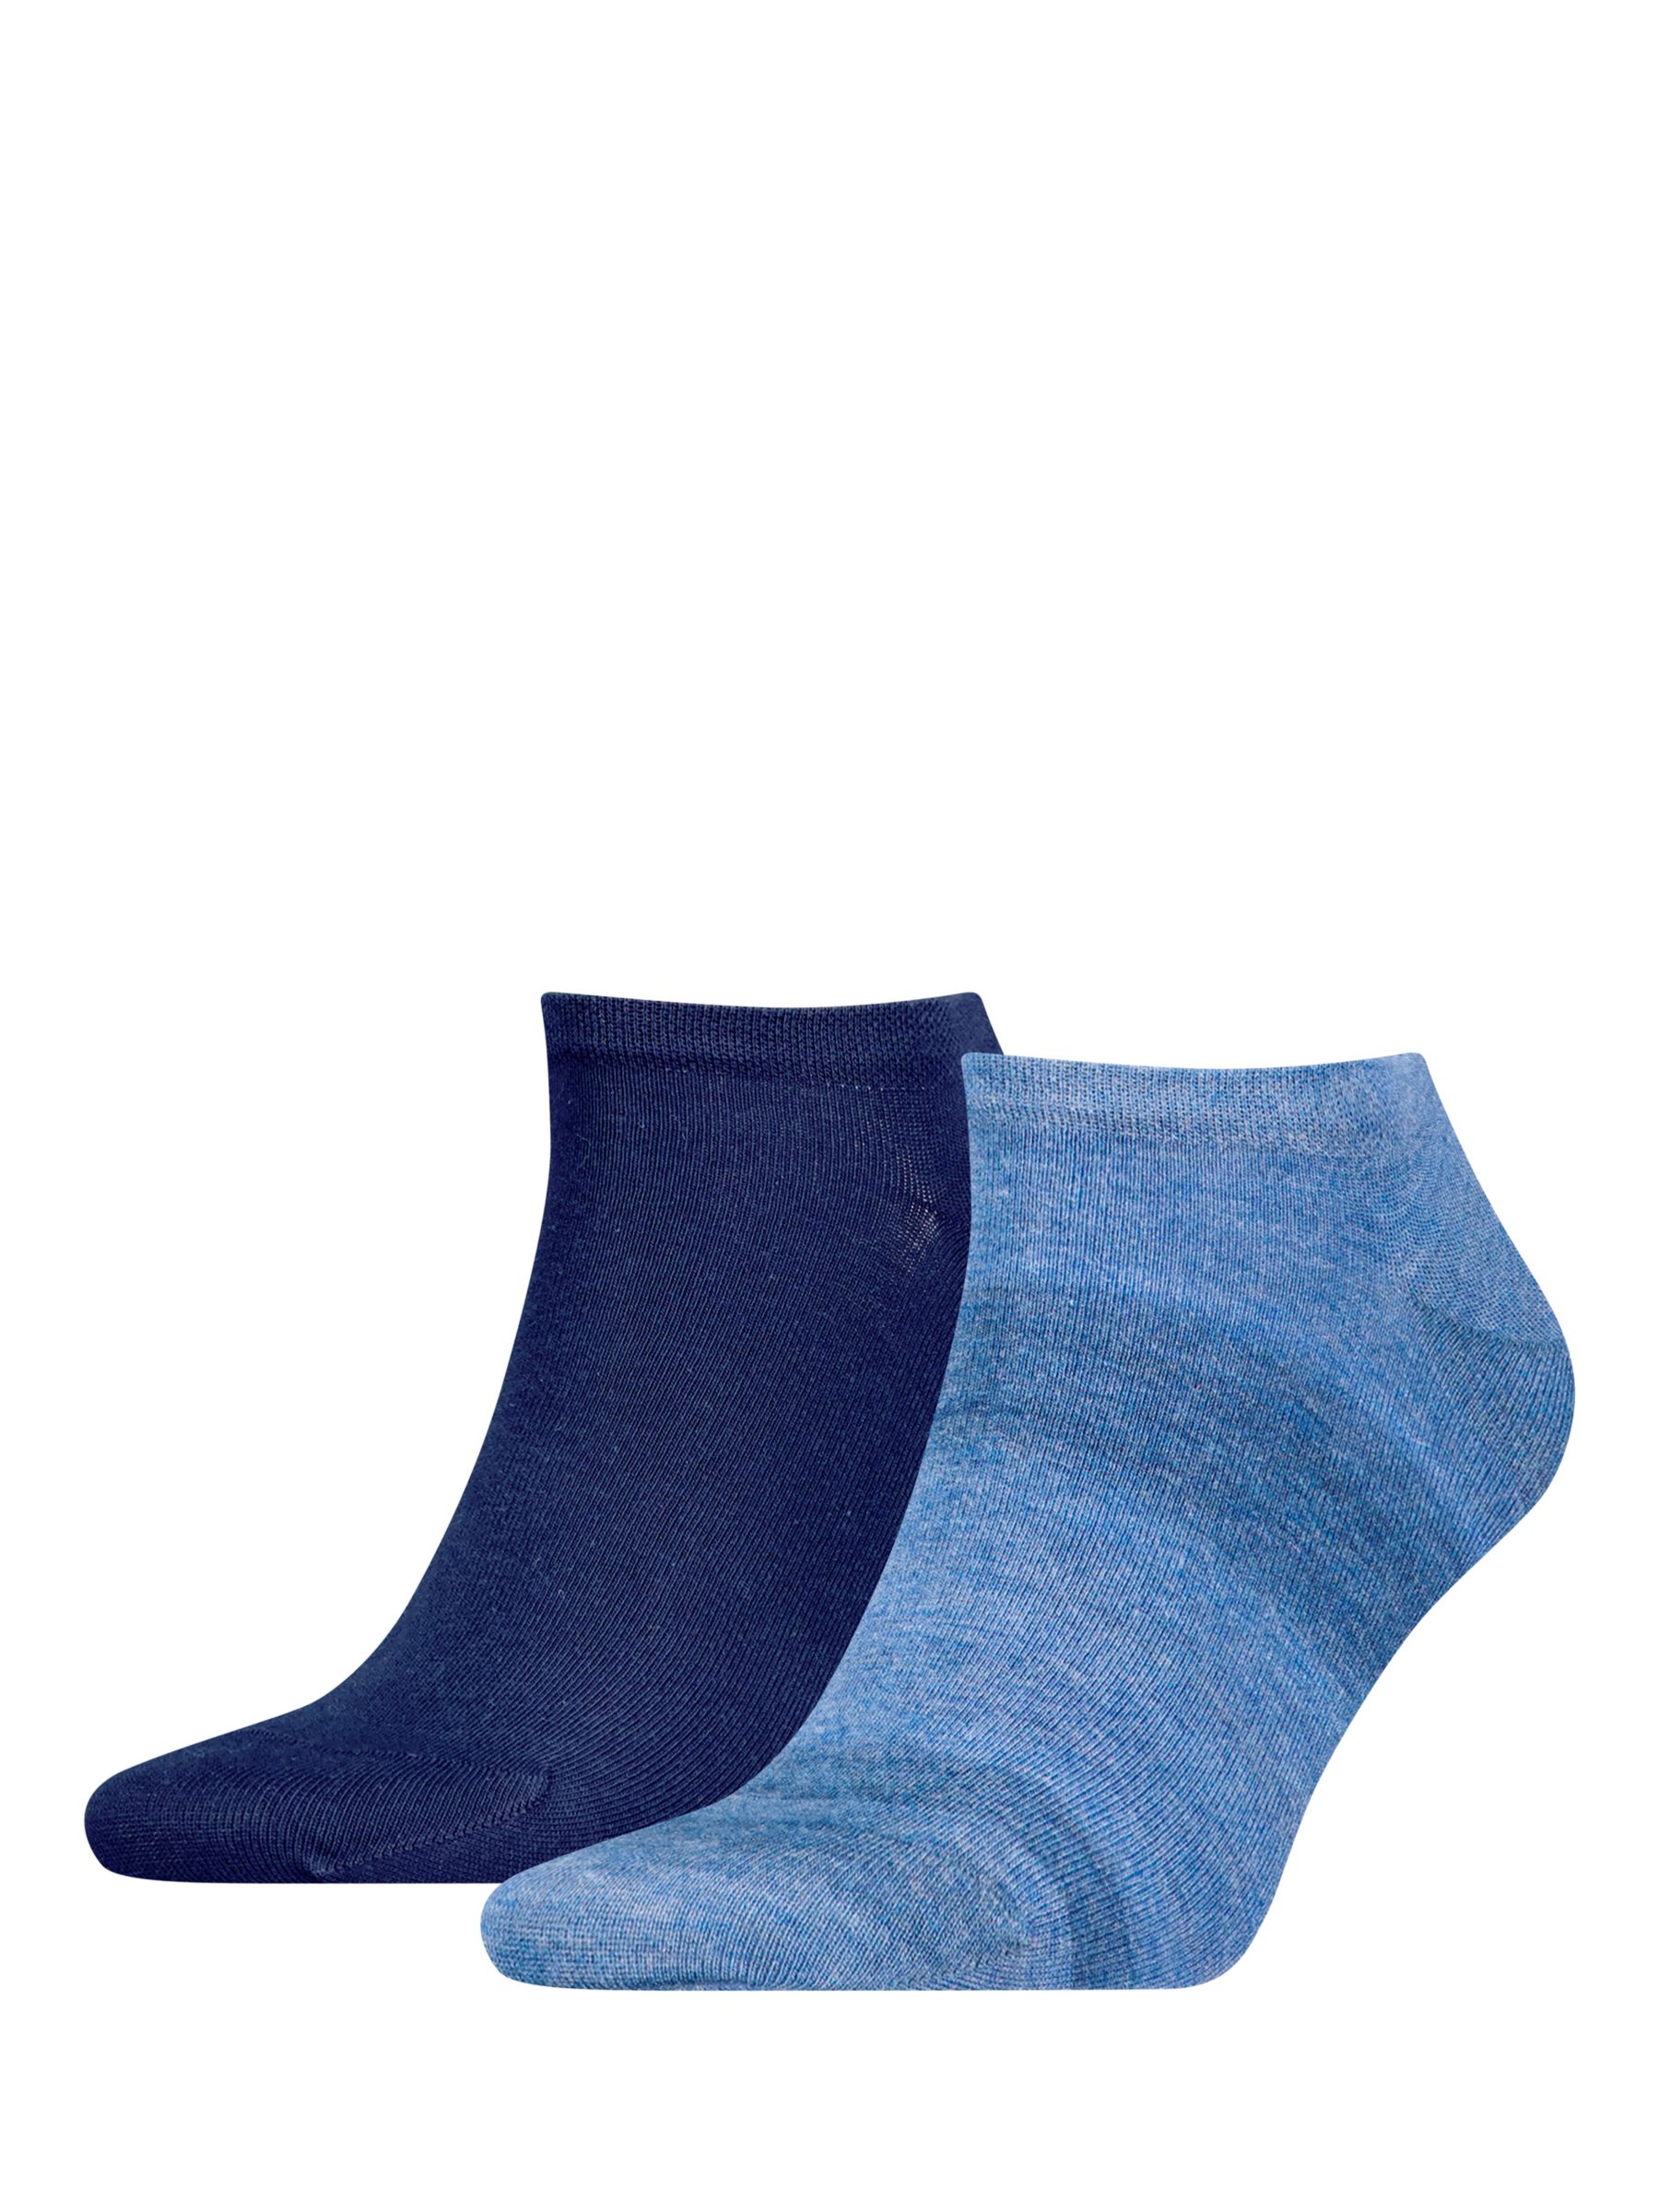 Calvin Klein Trainer Socks, Pack of 2, Blue